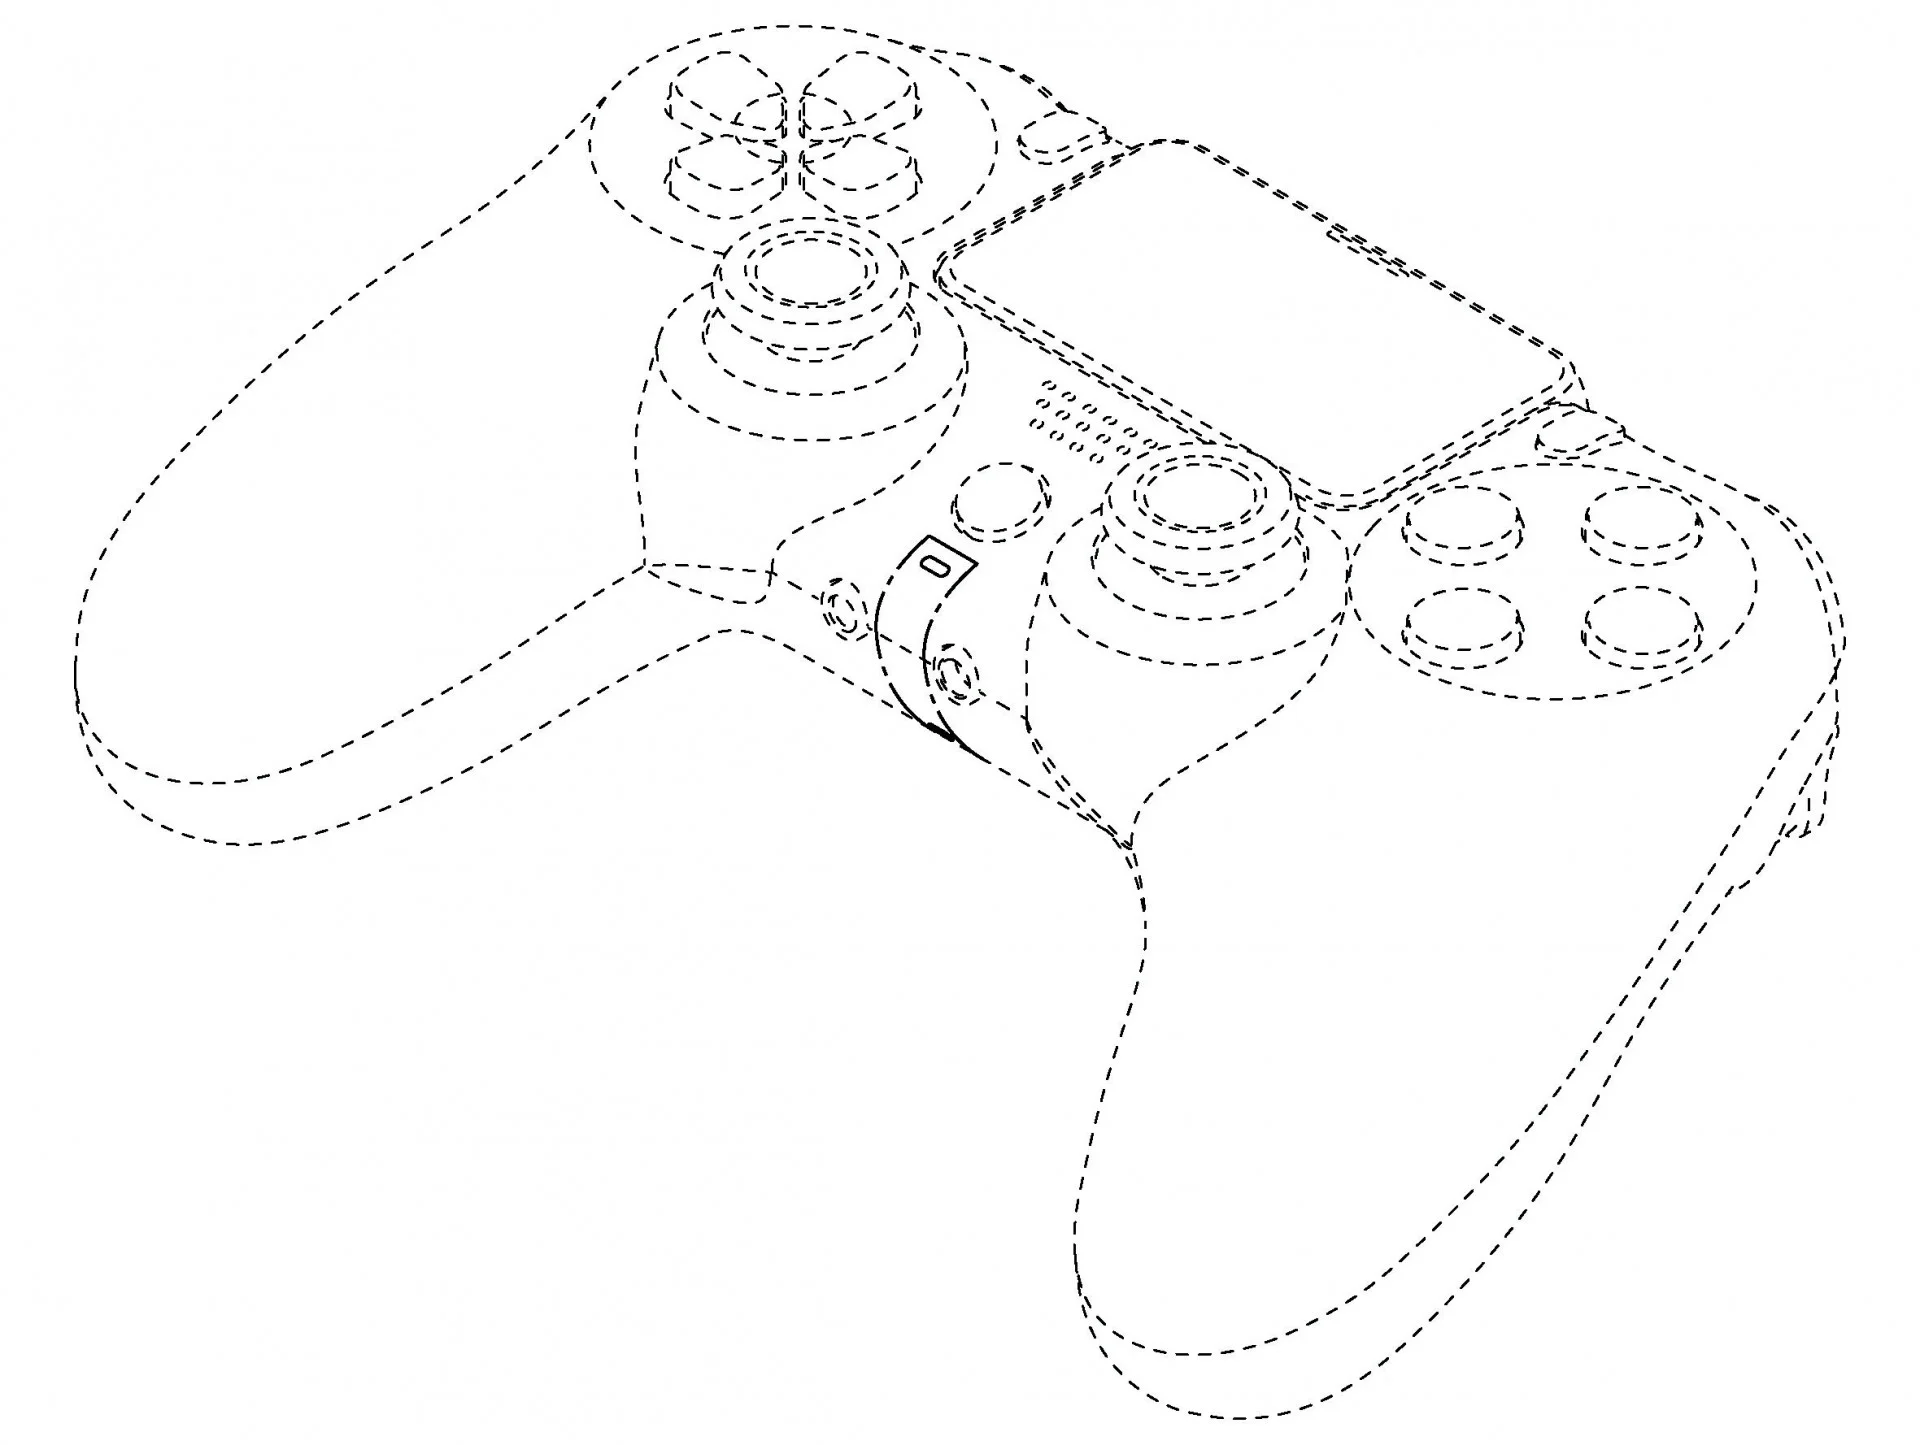 Sony опубликовала схемы геймпада PlayStation 5 — он отличается от DualShock 4 - фото 5